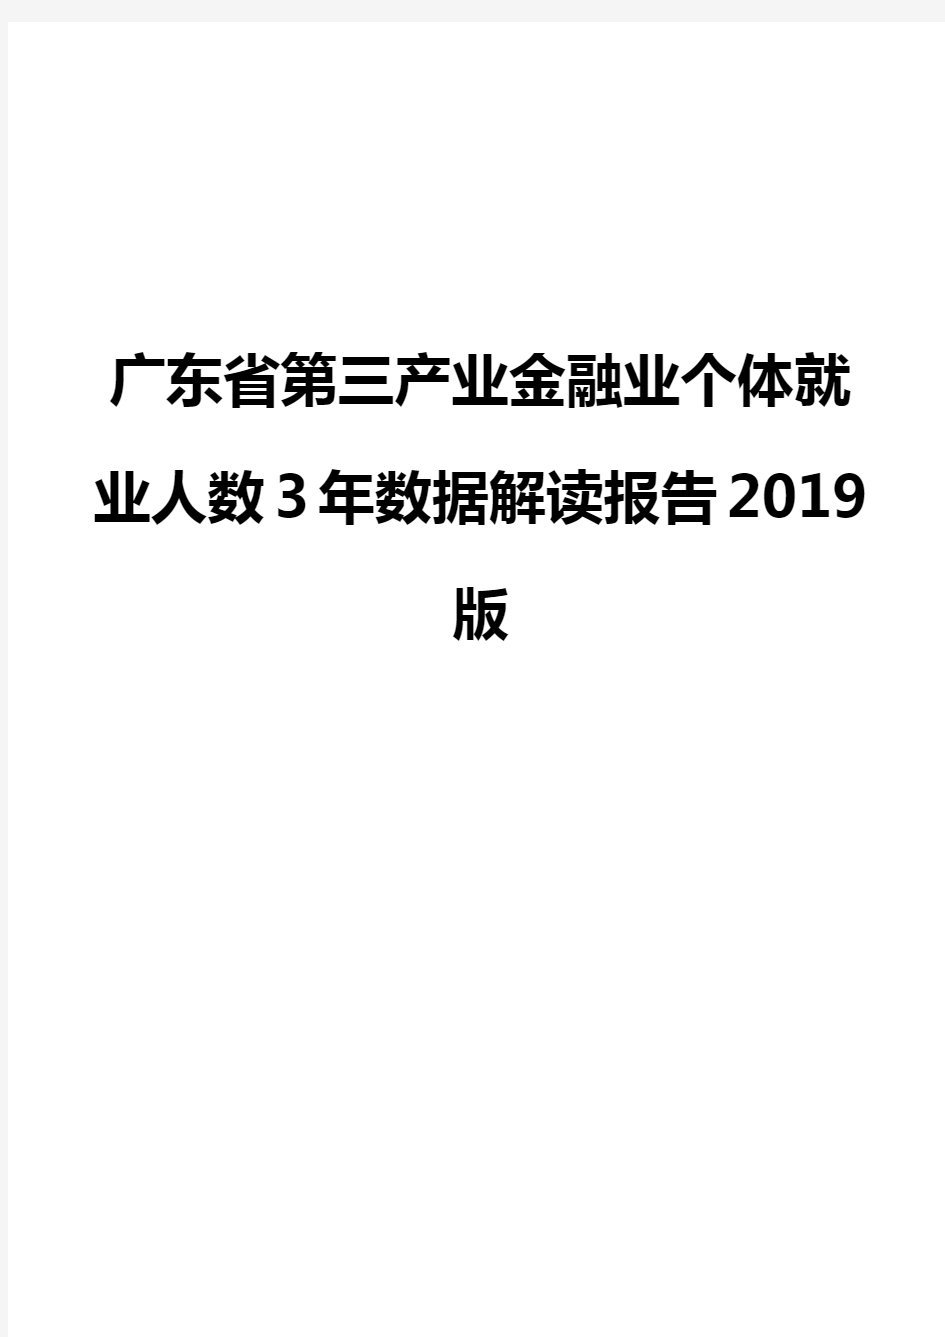 广东省第三产业金融业个体就业人数3年数据解读报告2019版